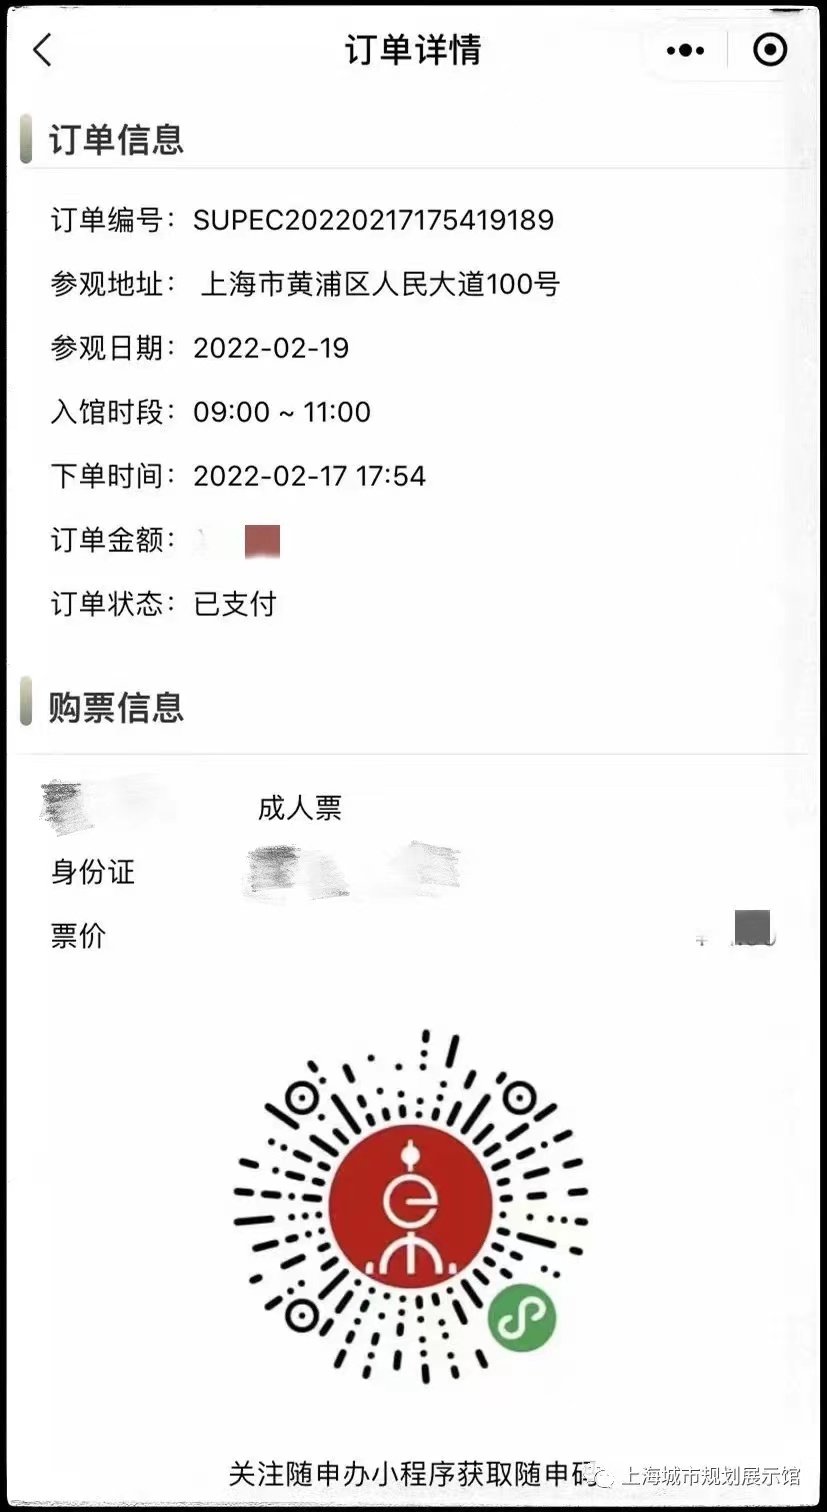 上海城市规划展示馆压力测试预约方式(入口+流程)